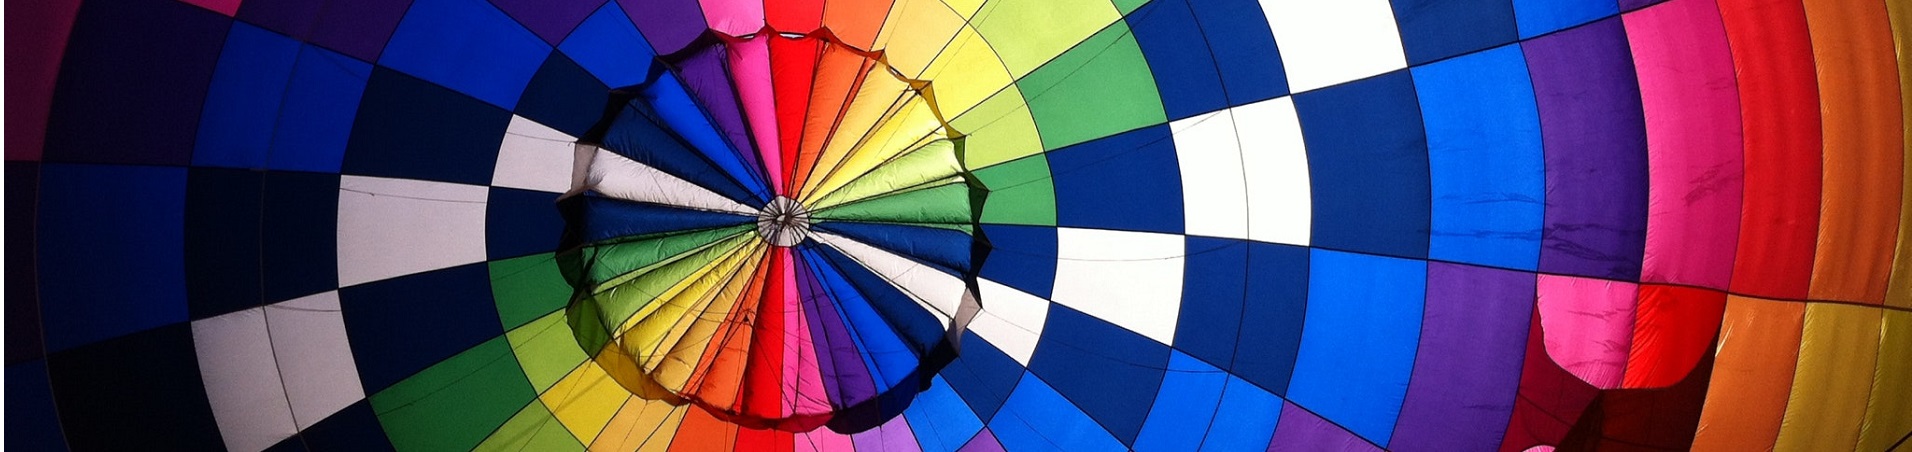 intérieur d'une montgolfière multi-colores